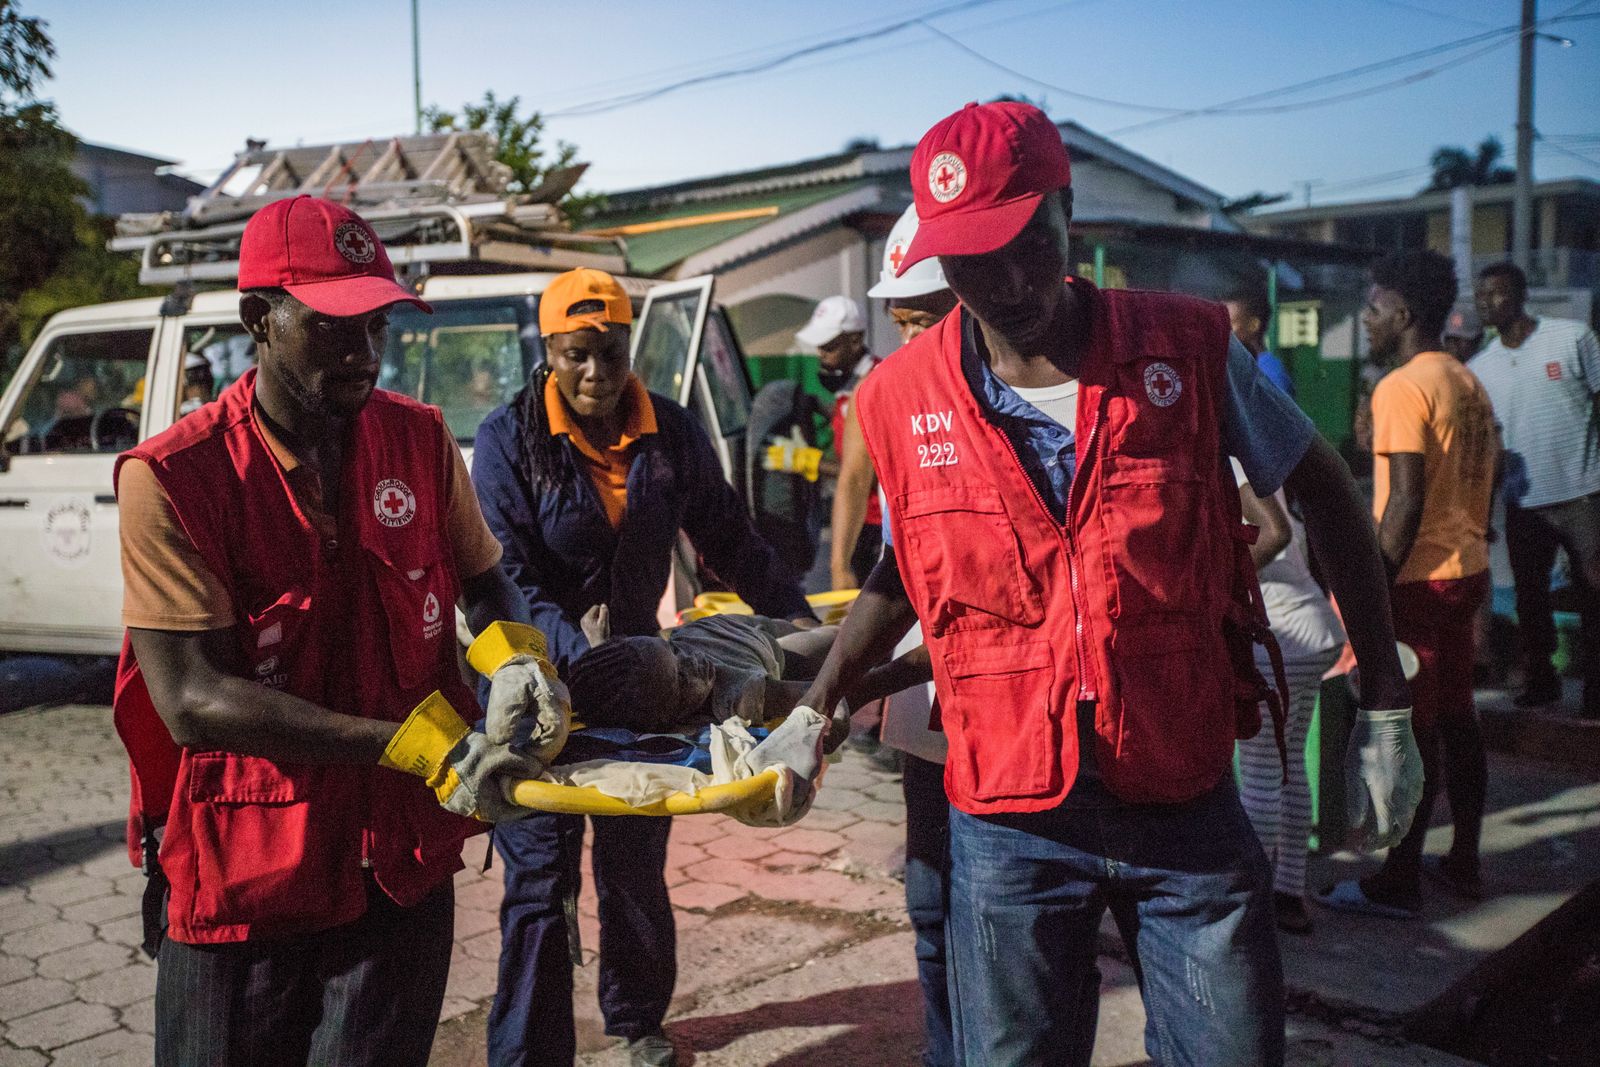 مسعفو الصليب الأحمر يحملون فتاة أصيبت خلال الزلزال، وسط عمليات البحث عن ناجيين. - REUTERS